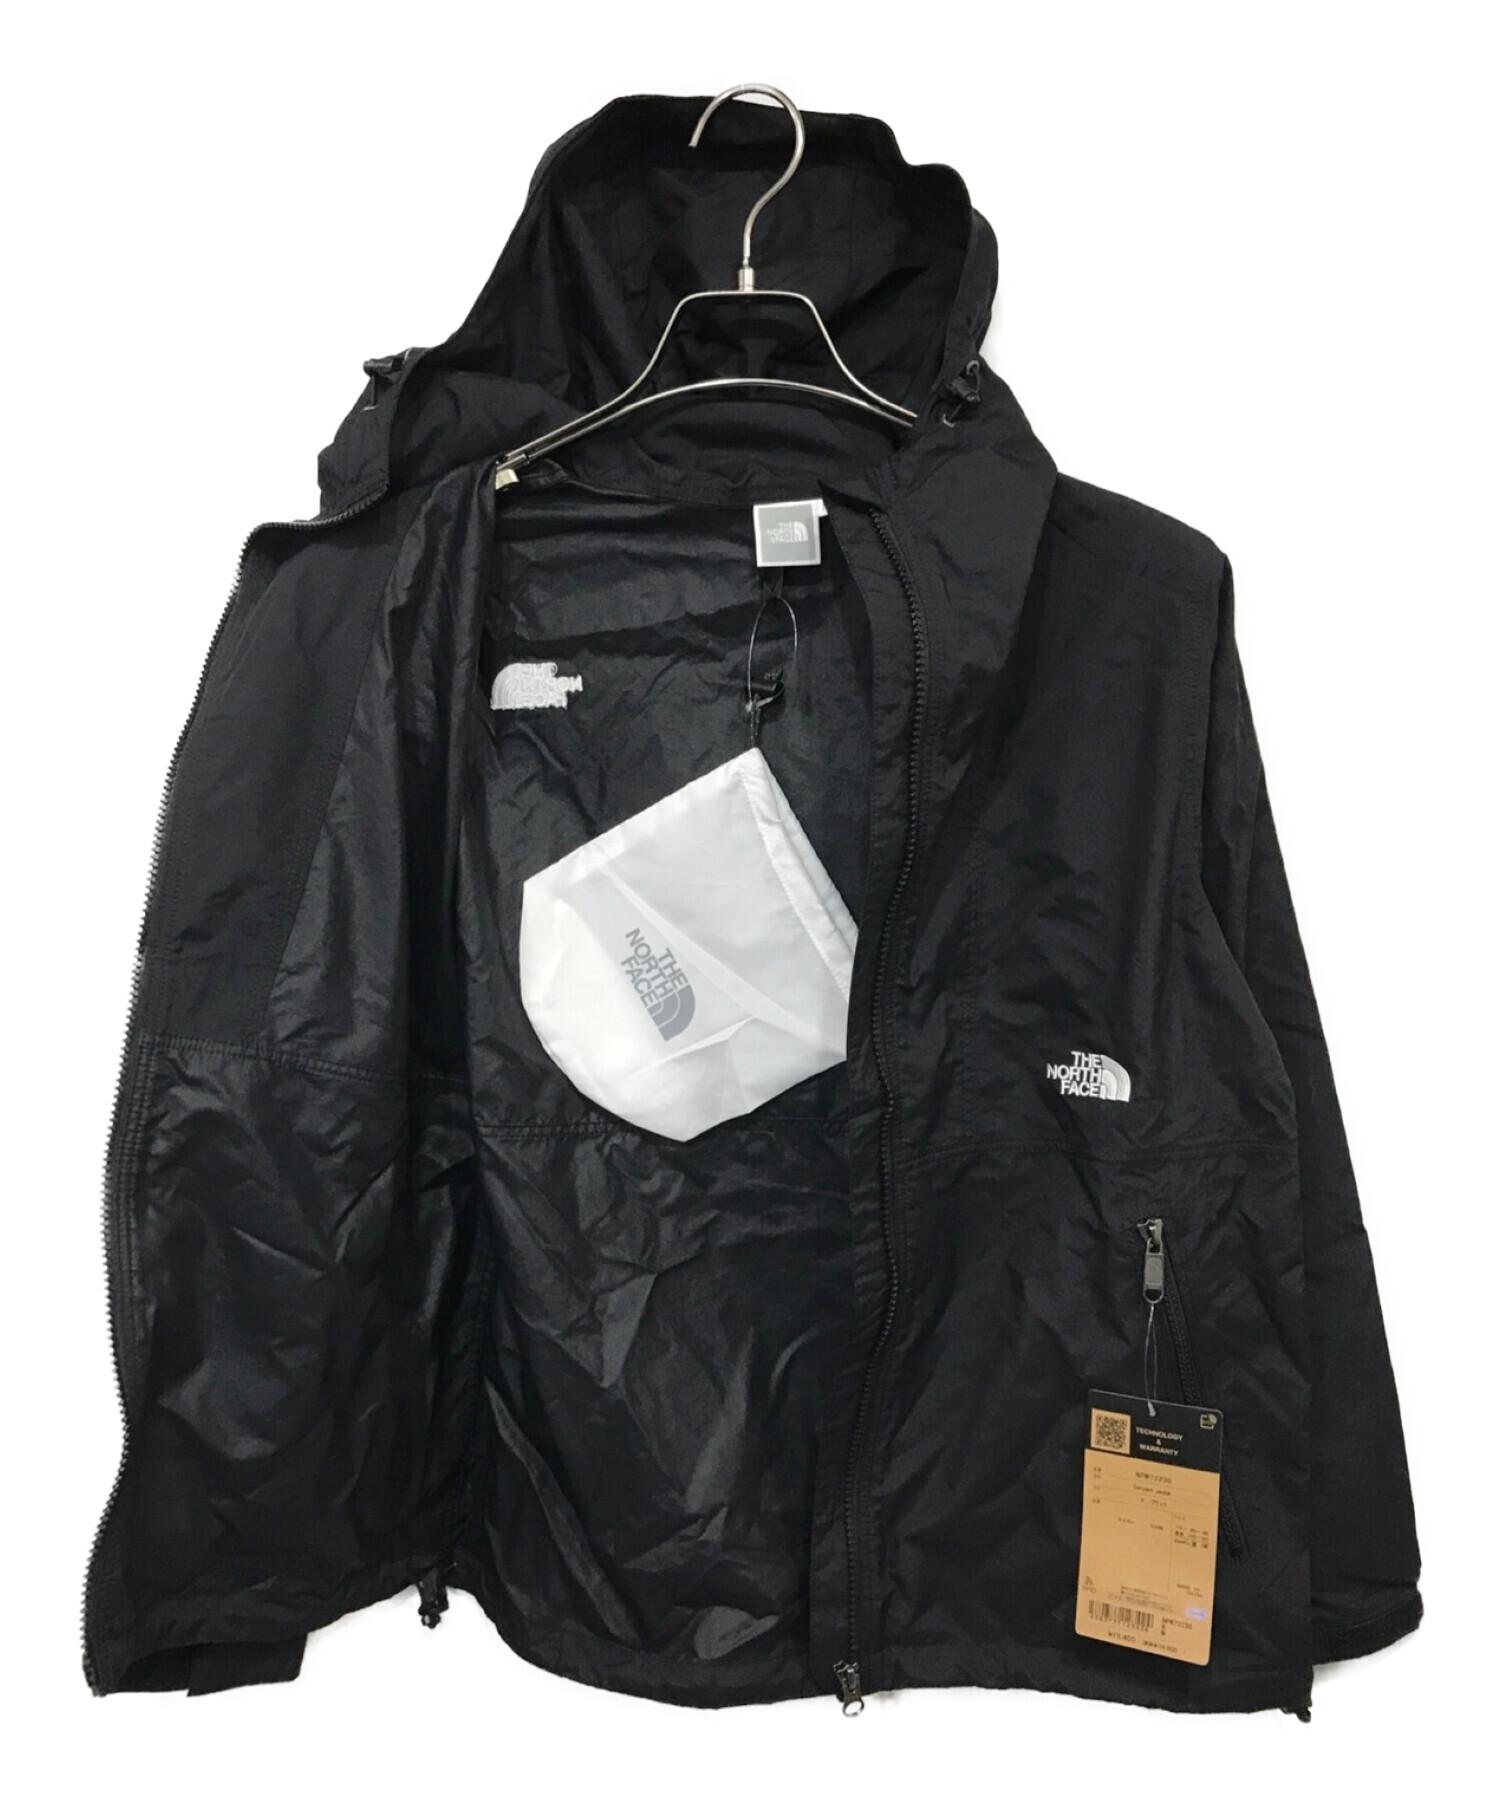 THE NORTH FACE (ザ ノース フェイス) Compact Jacket コンパクトジャケット ブラック サイズ:M